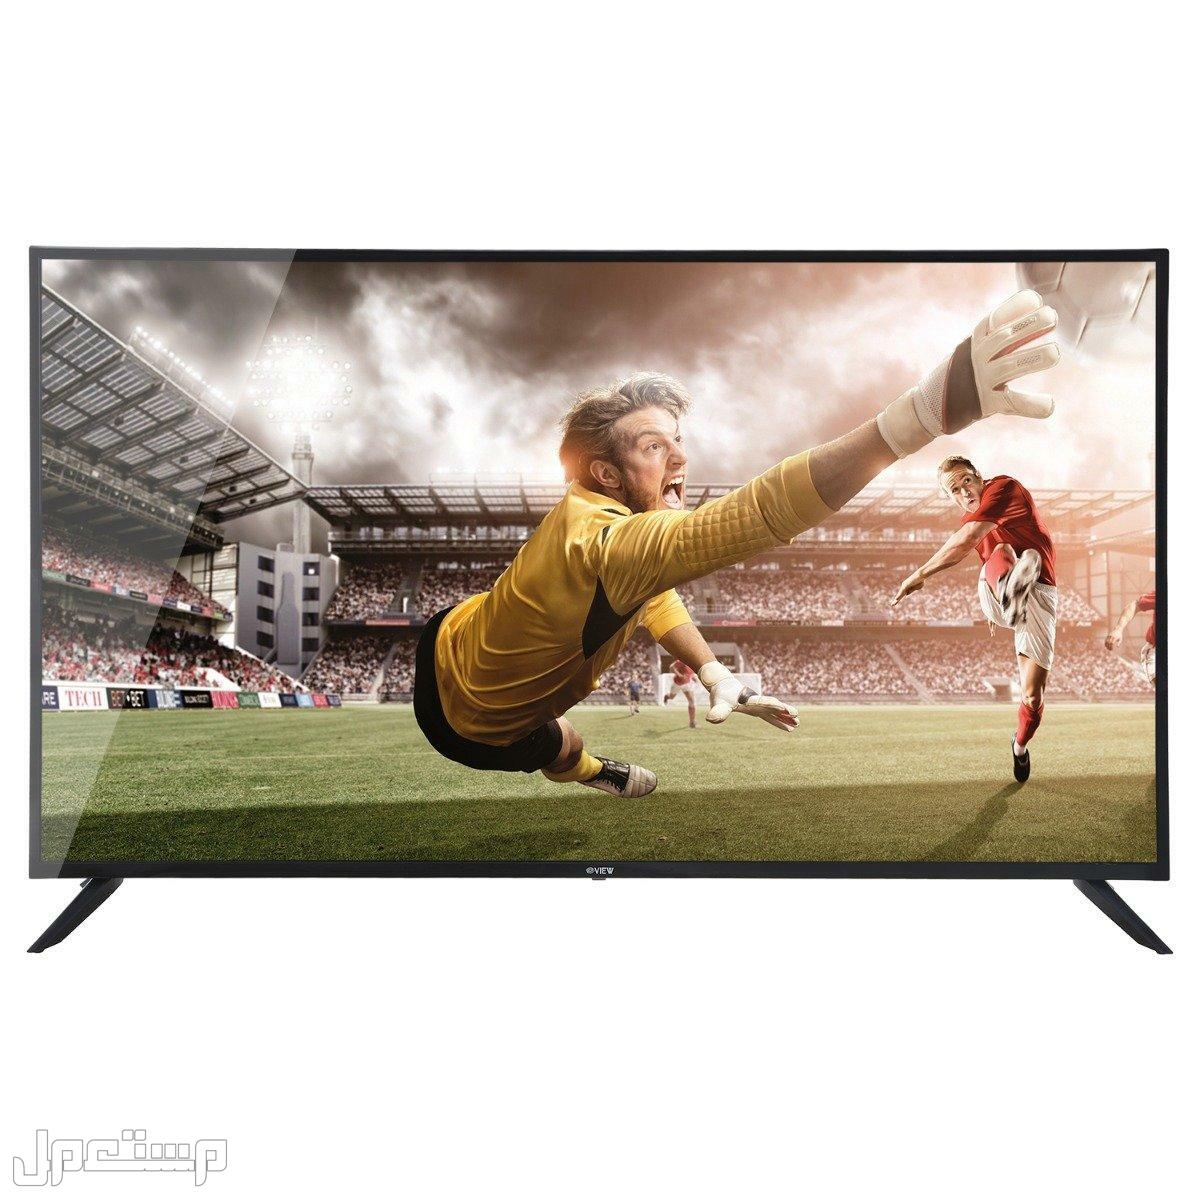 أرخص شاشات تلفزيون يمكنك شرائها (دليلك الكامل) في لبنان ارخص شاشات تلفزيون